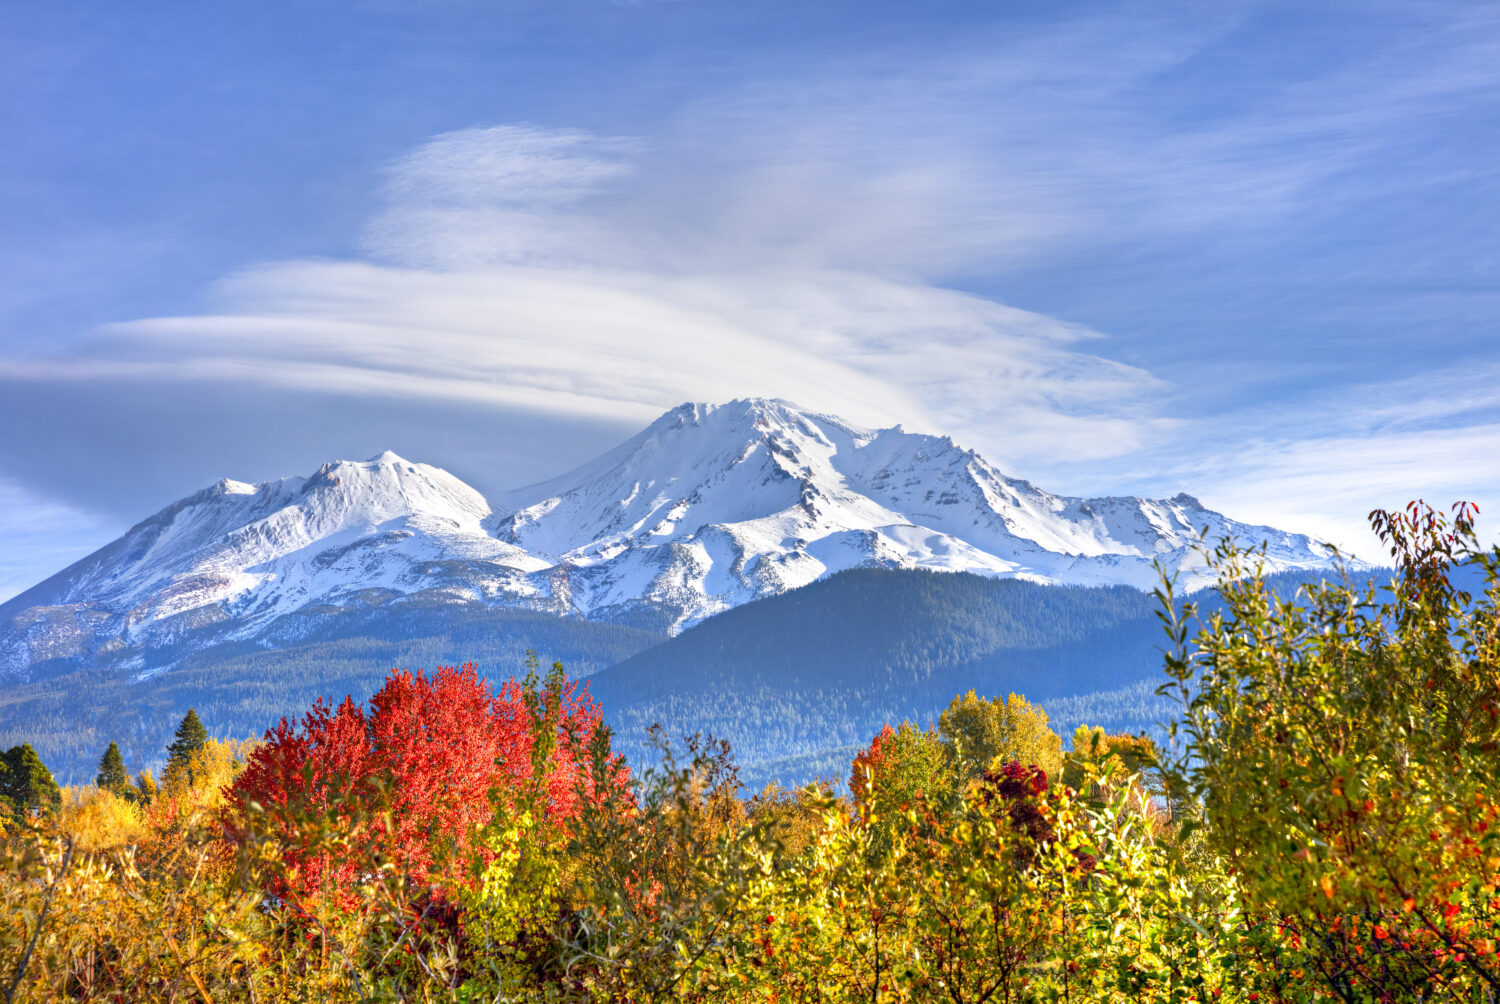 Il Monte Shasta ricoperto di neve in autunno.